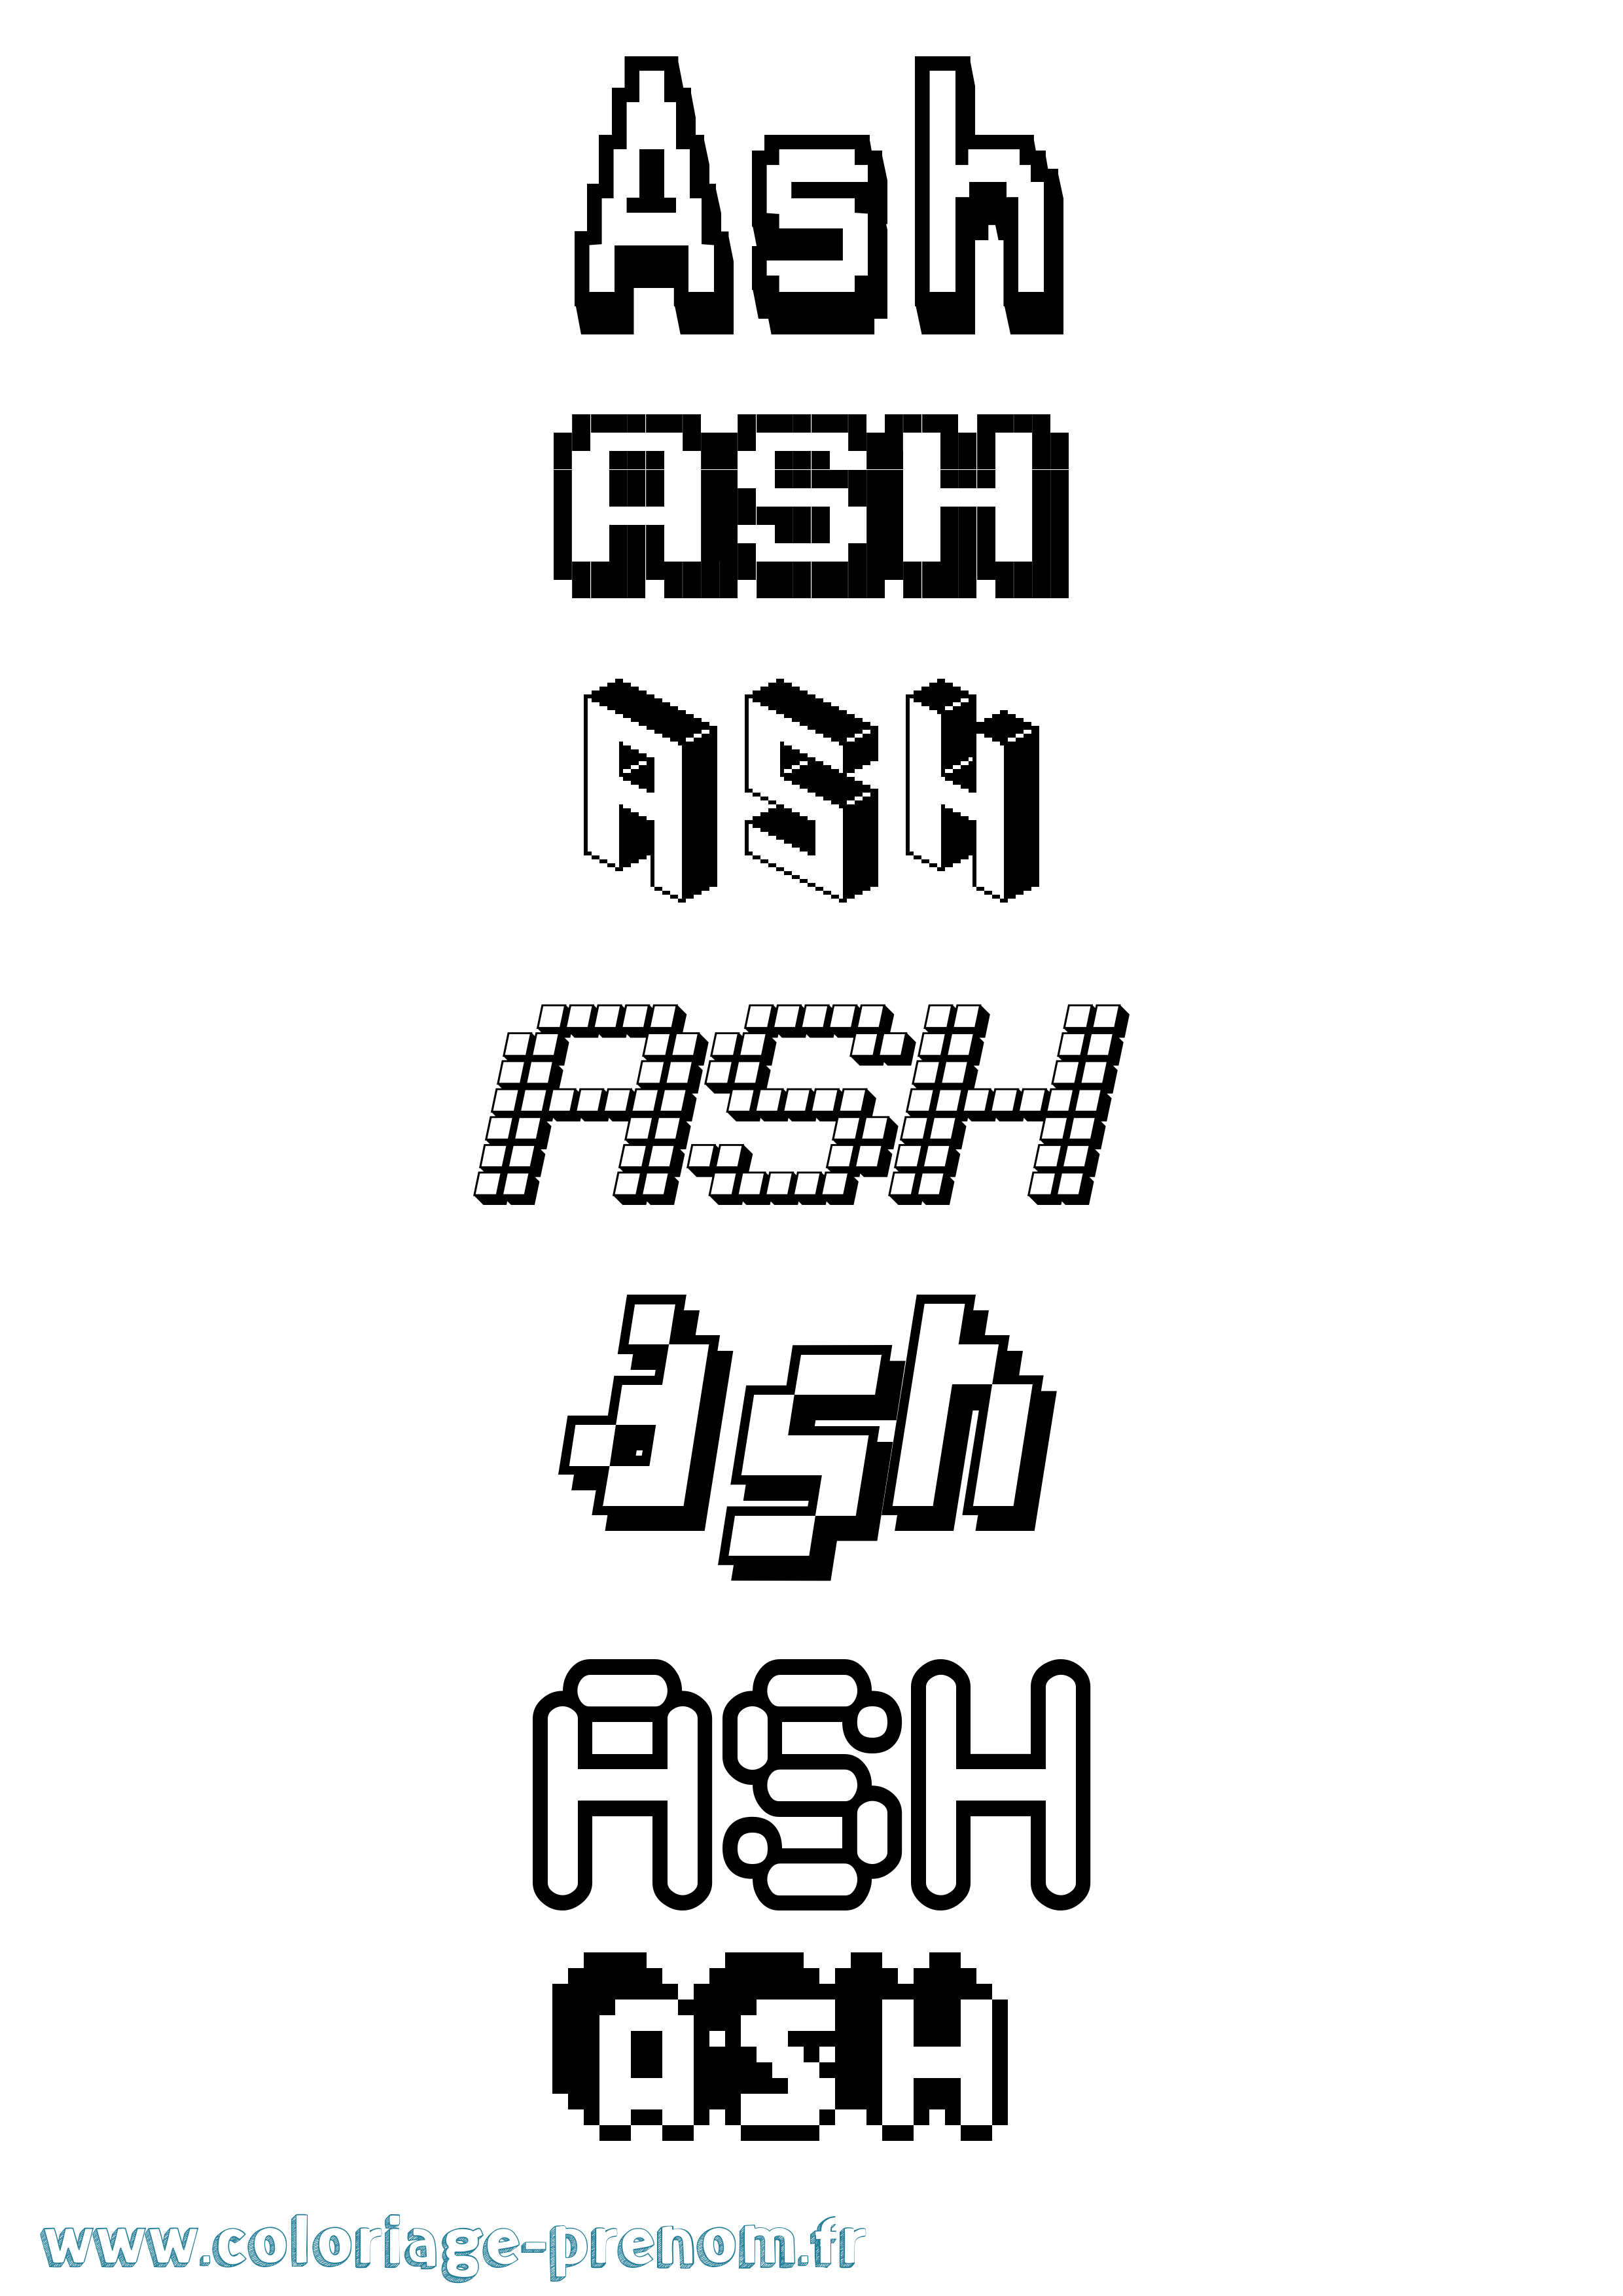 Coloriage prénom Ash Pixel